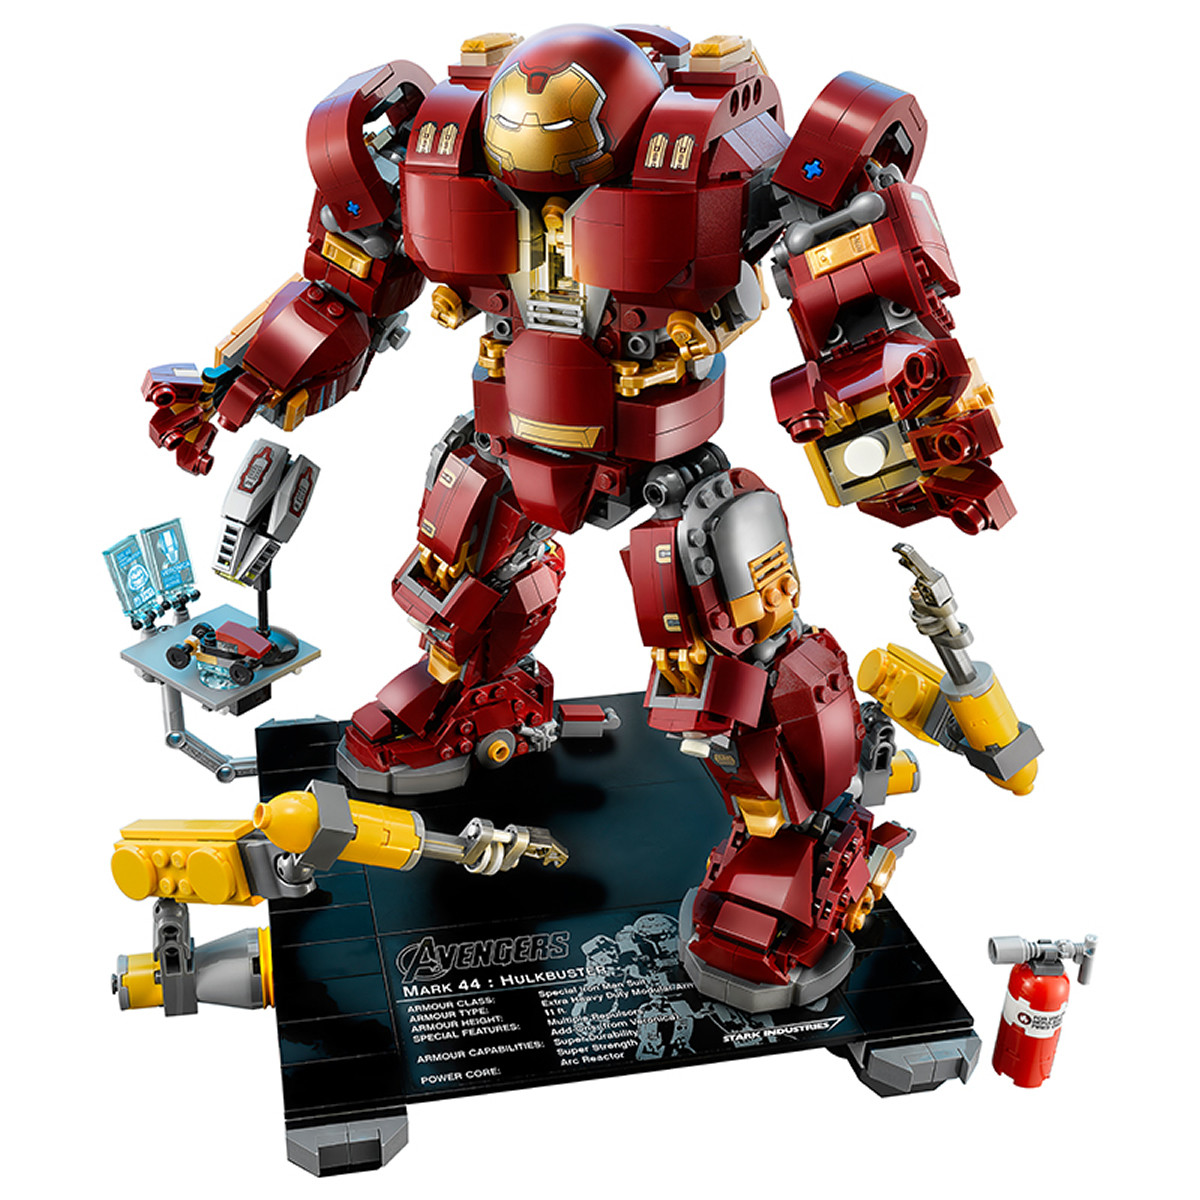 乐高积木玩具漫威超级英雄系列76105反浩克装甲-奥创纪元版